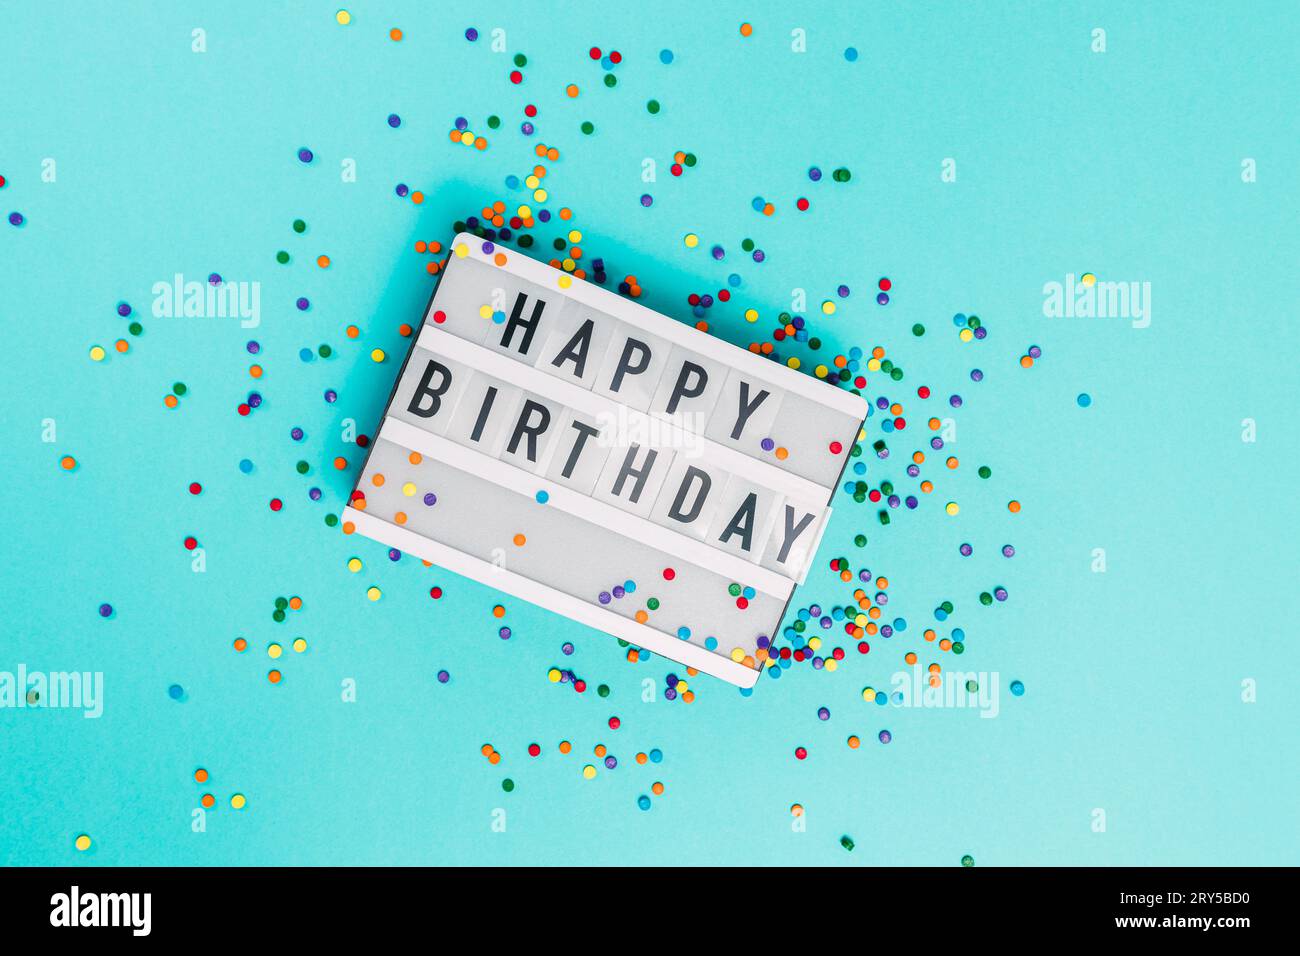 Visionneuse avec texte Joyeux anniversaire et saupoudrages de sucre colorés, vue de dessus Banque D'Images